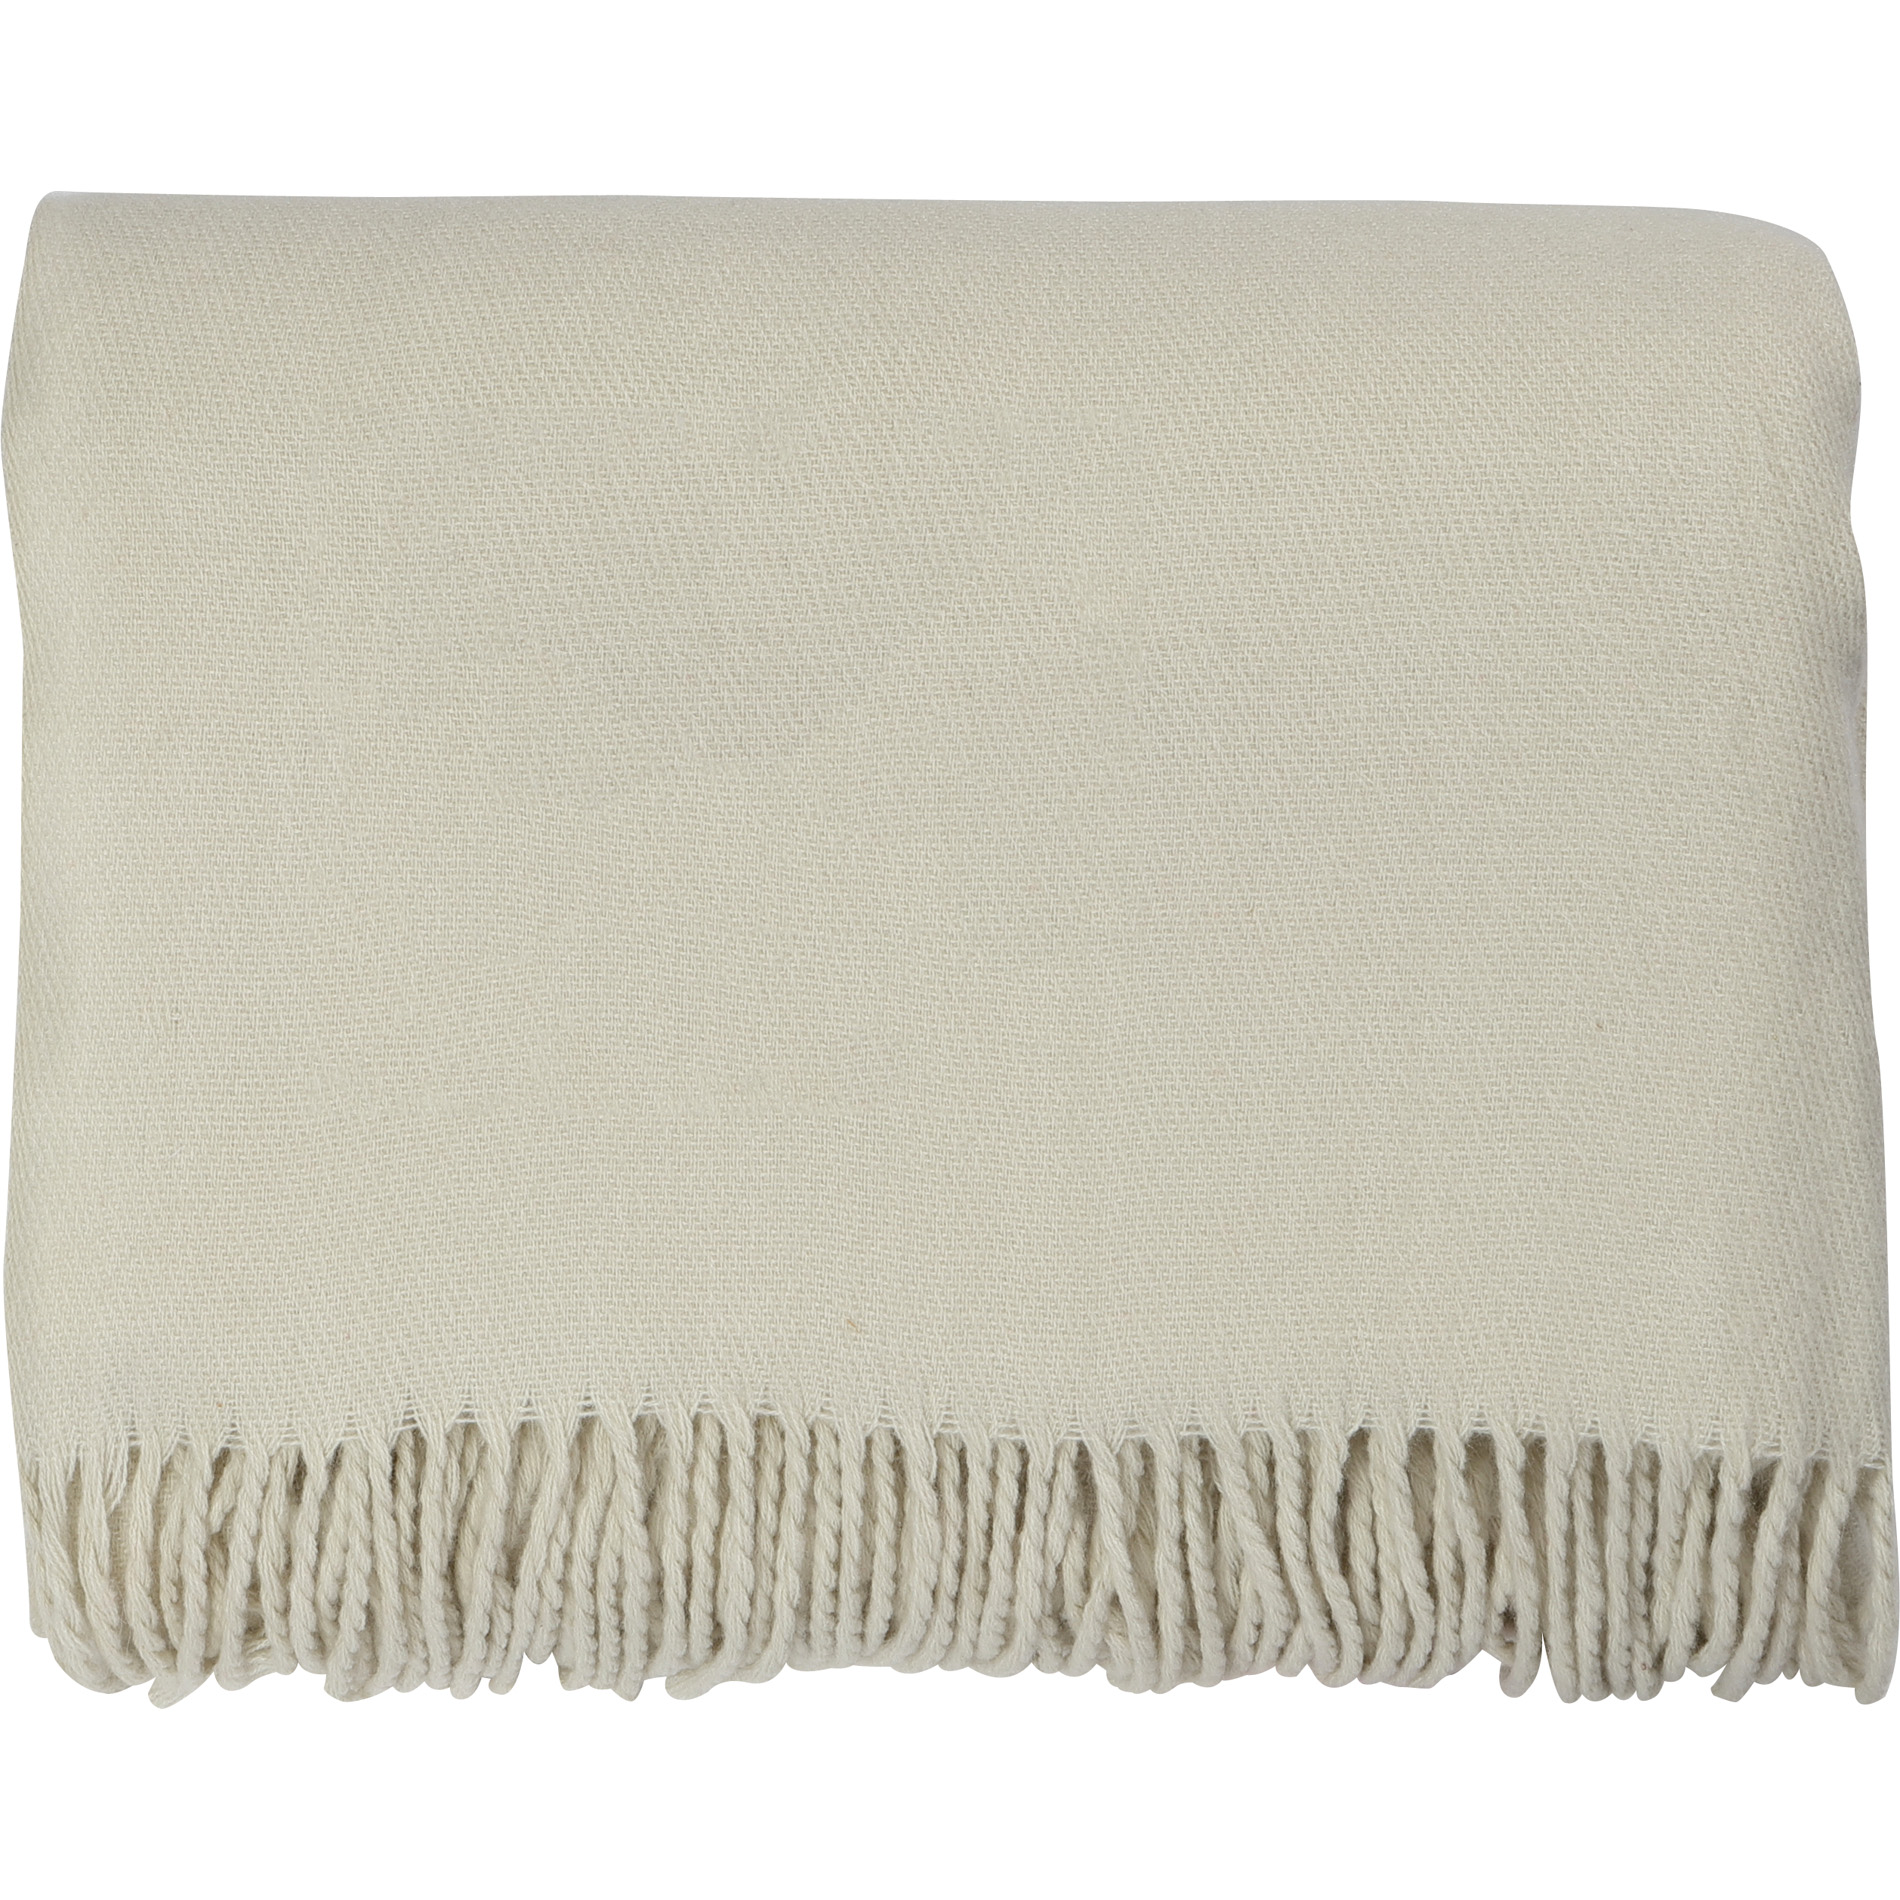 LEEDS 1081-09 - Acrylic Throw Blanket